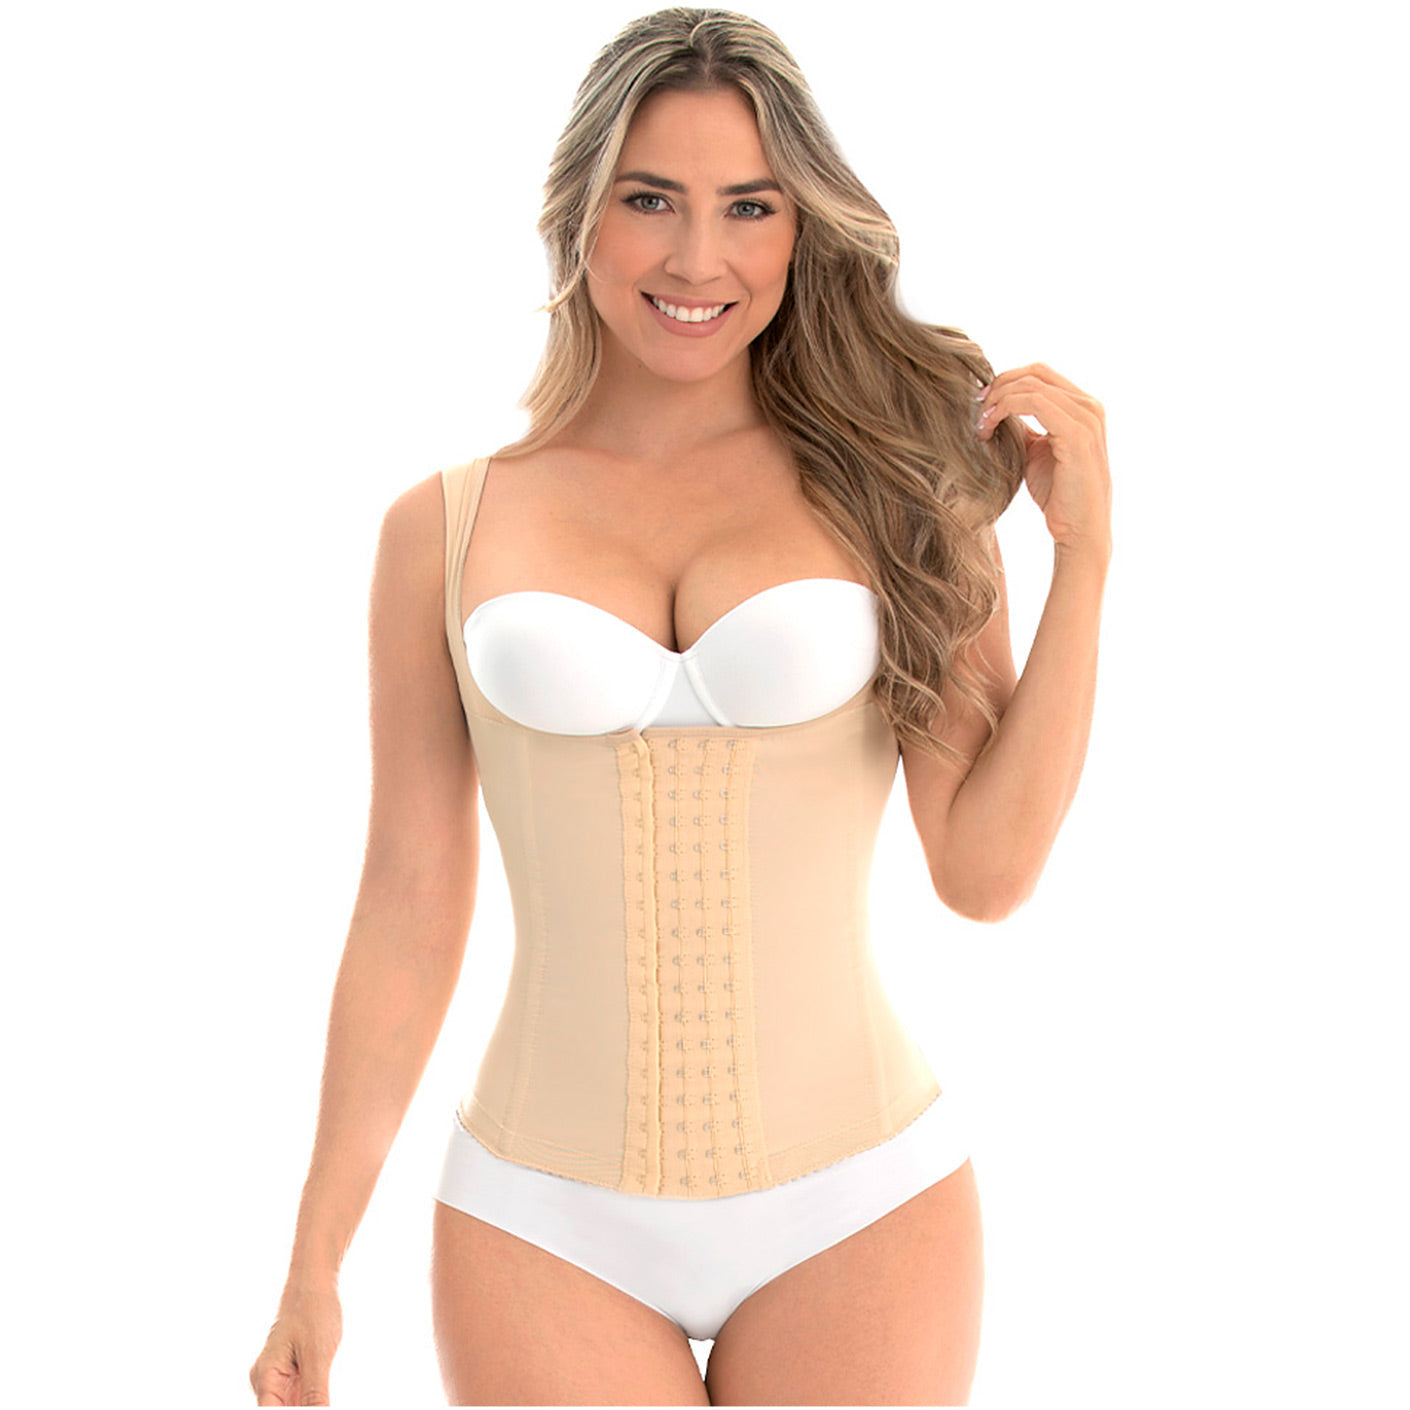 Fajas MYD C-4055 - Women's Tummy Control Shapewear Vest Girdle